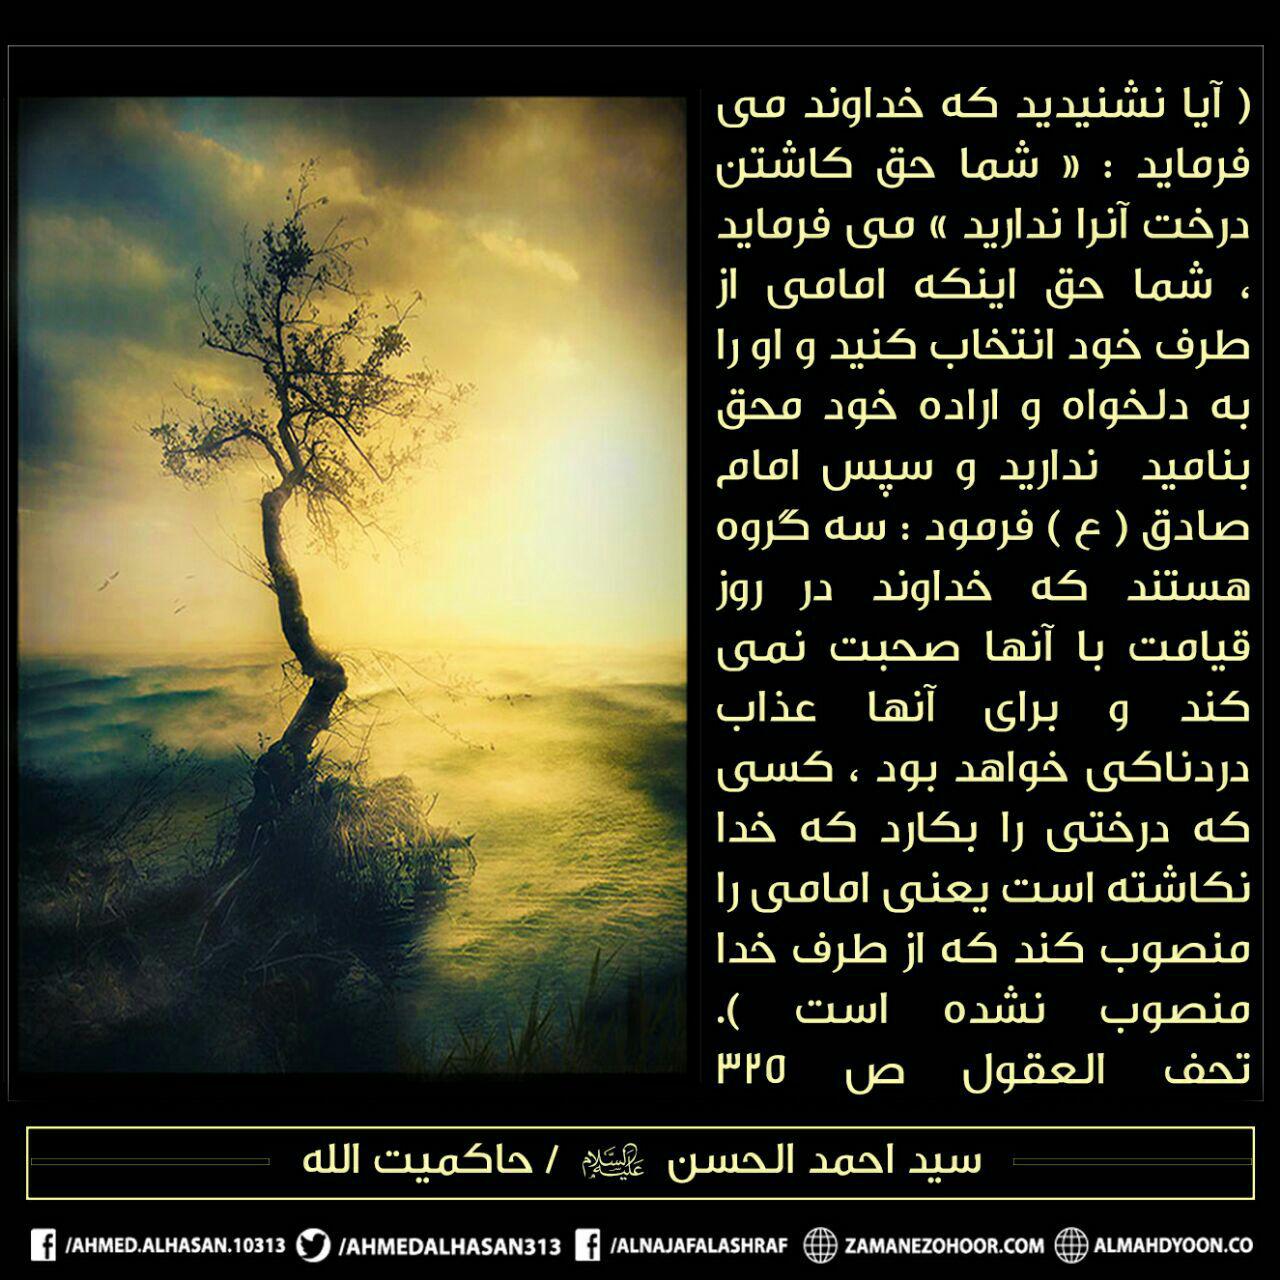 مردم نباید از طرف خودشان امام انتخاب و تعیین کنند!